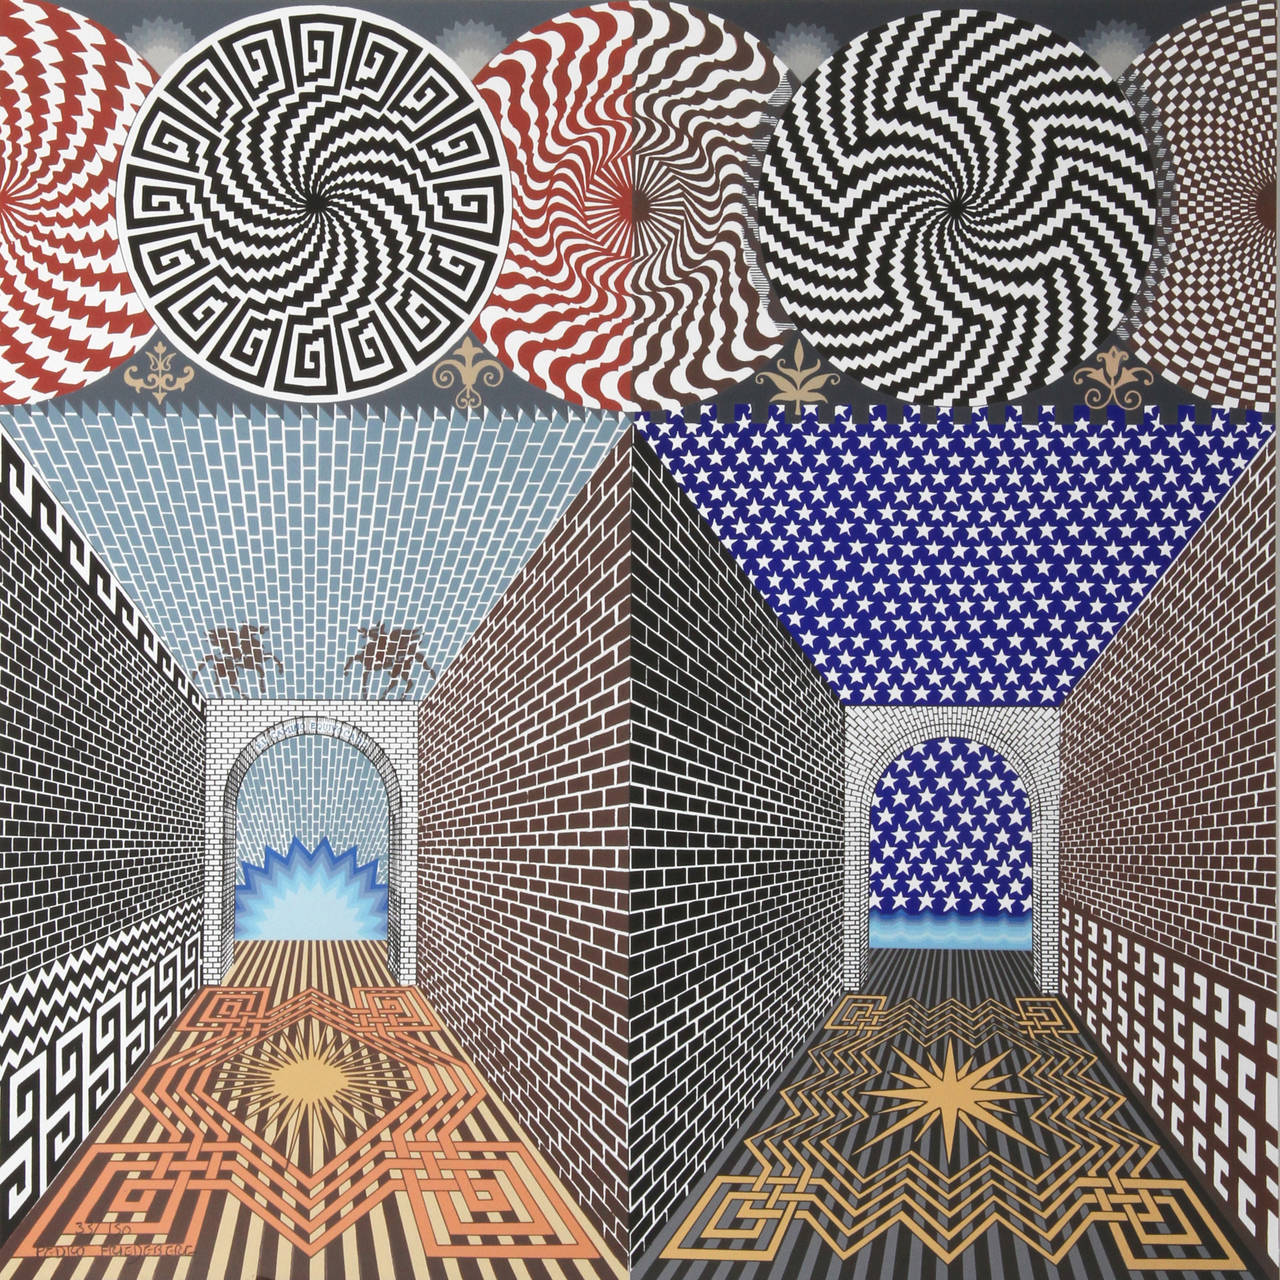 Encuentro de Dos Mundos, Geometric Op Art Screenprint by Pedro Friedeberg